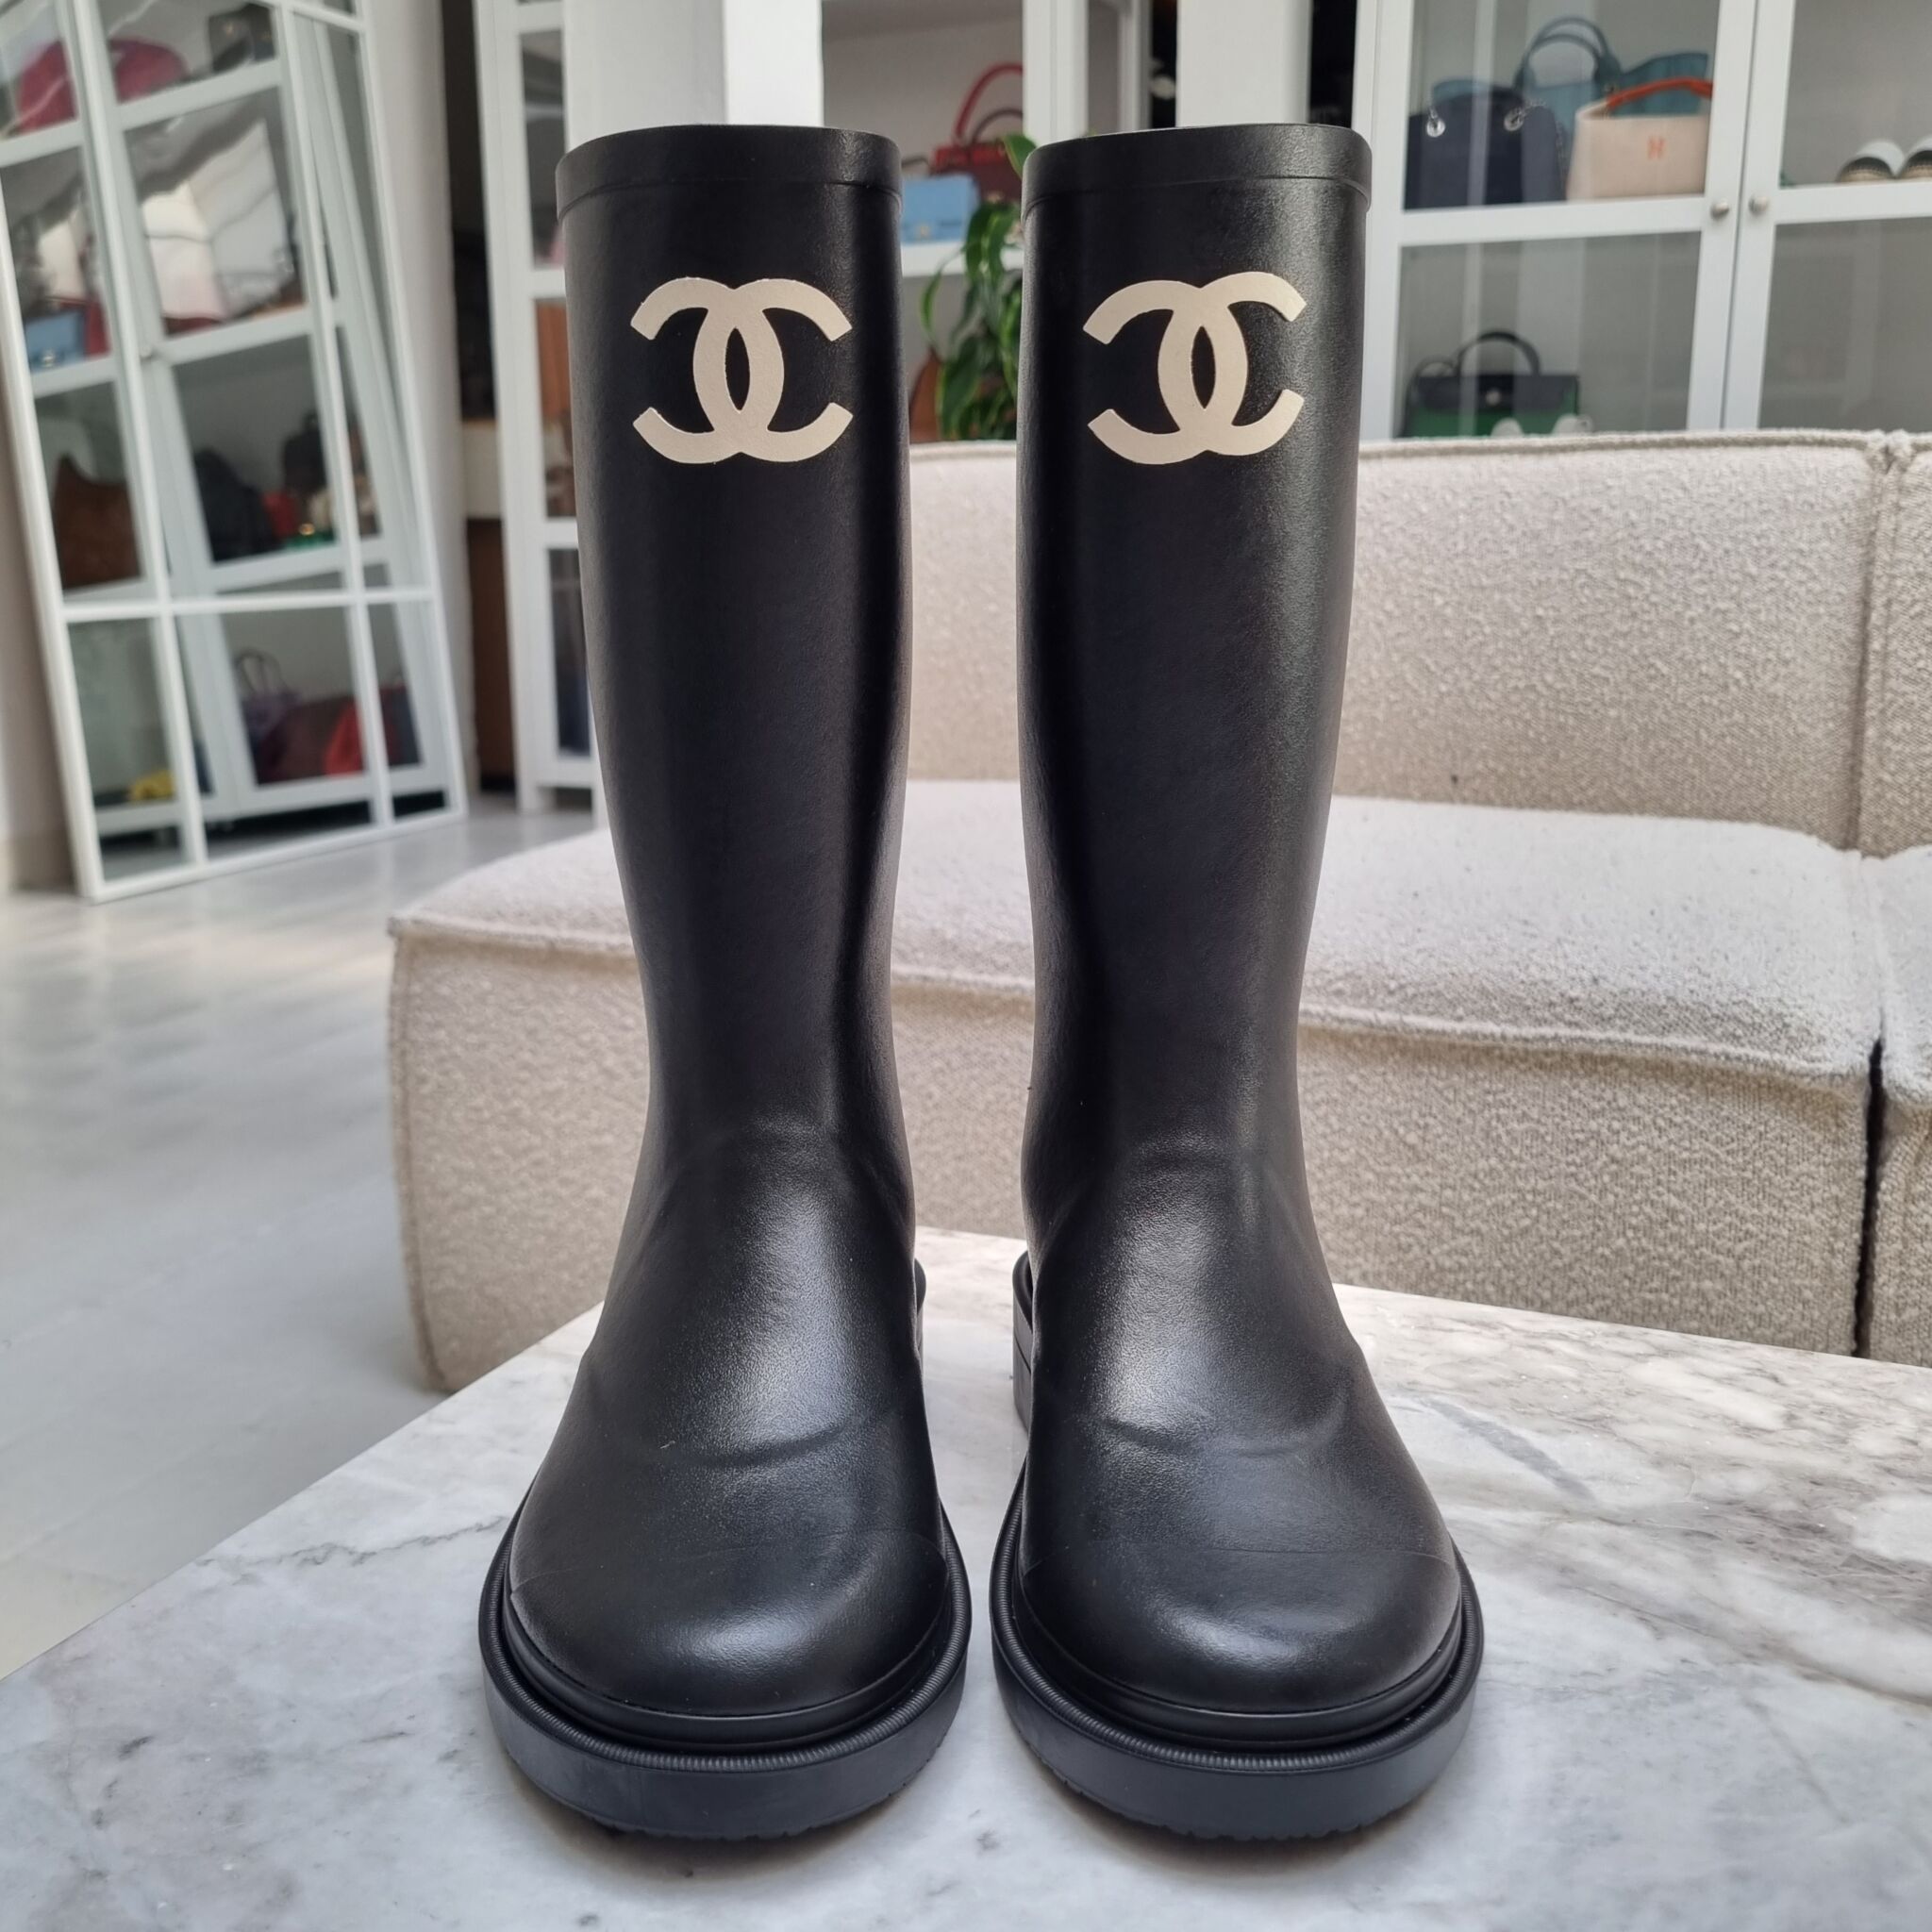 Chanel Rubber Rain Boots Beige  G39620 X56326 0Q304  US